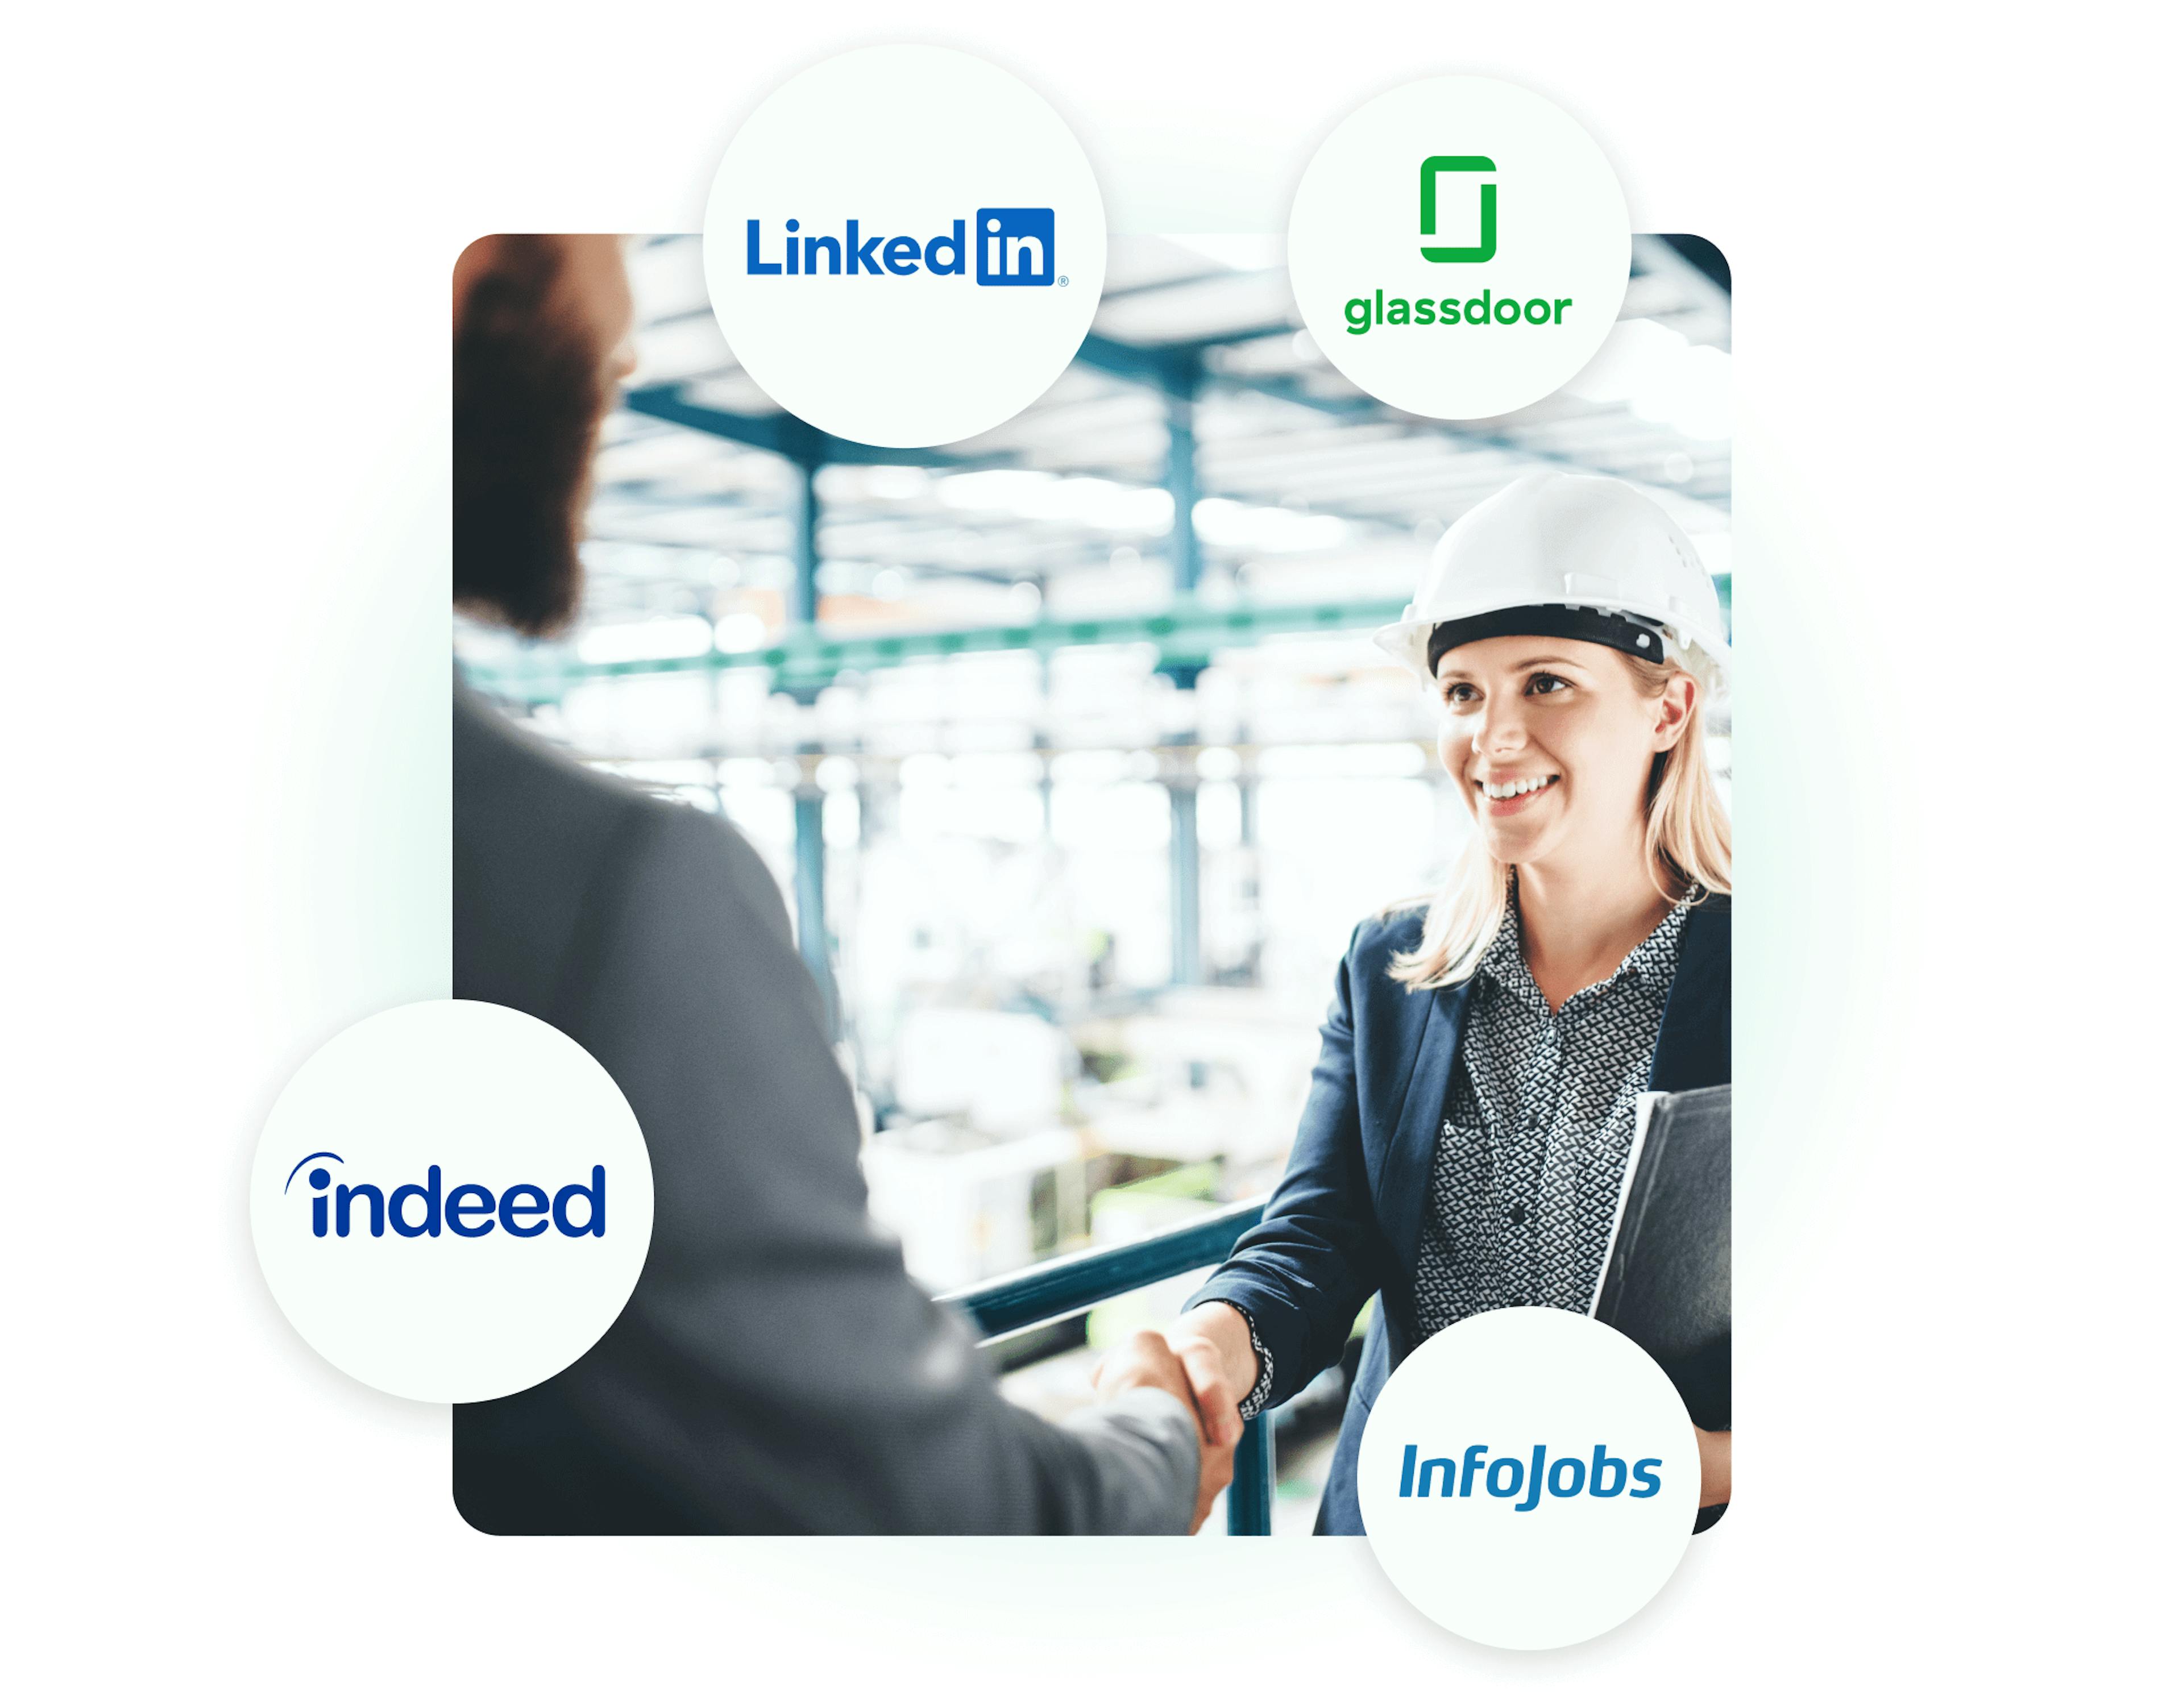 Integraciones de Kenjo para encontrar a los mejores candidatos como LinkedIn, Glassdoor, Indeed e Infojobs.